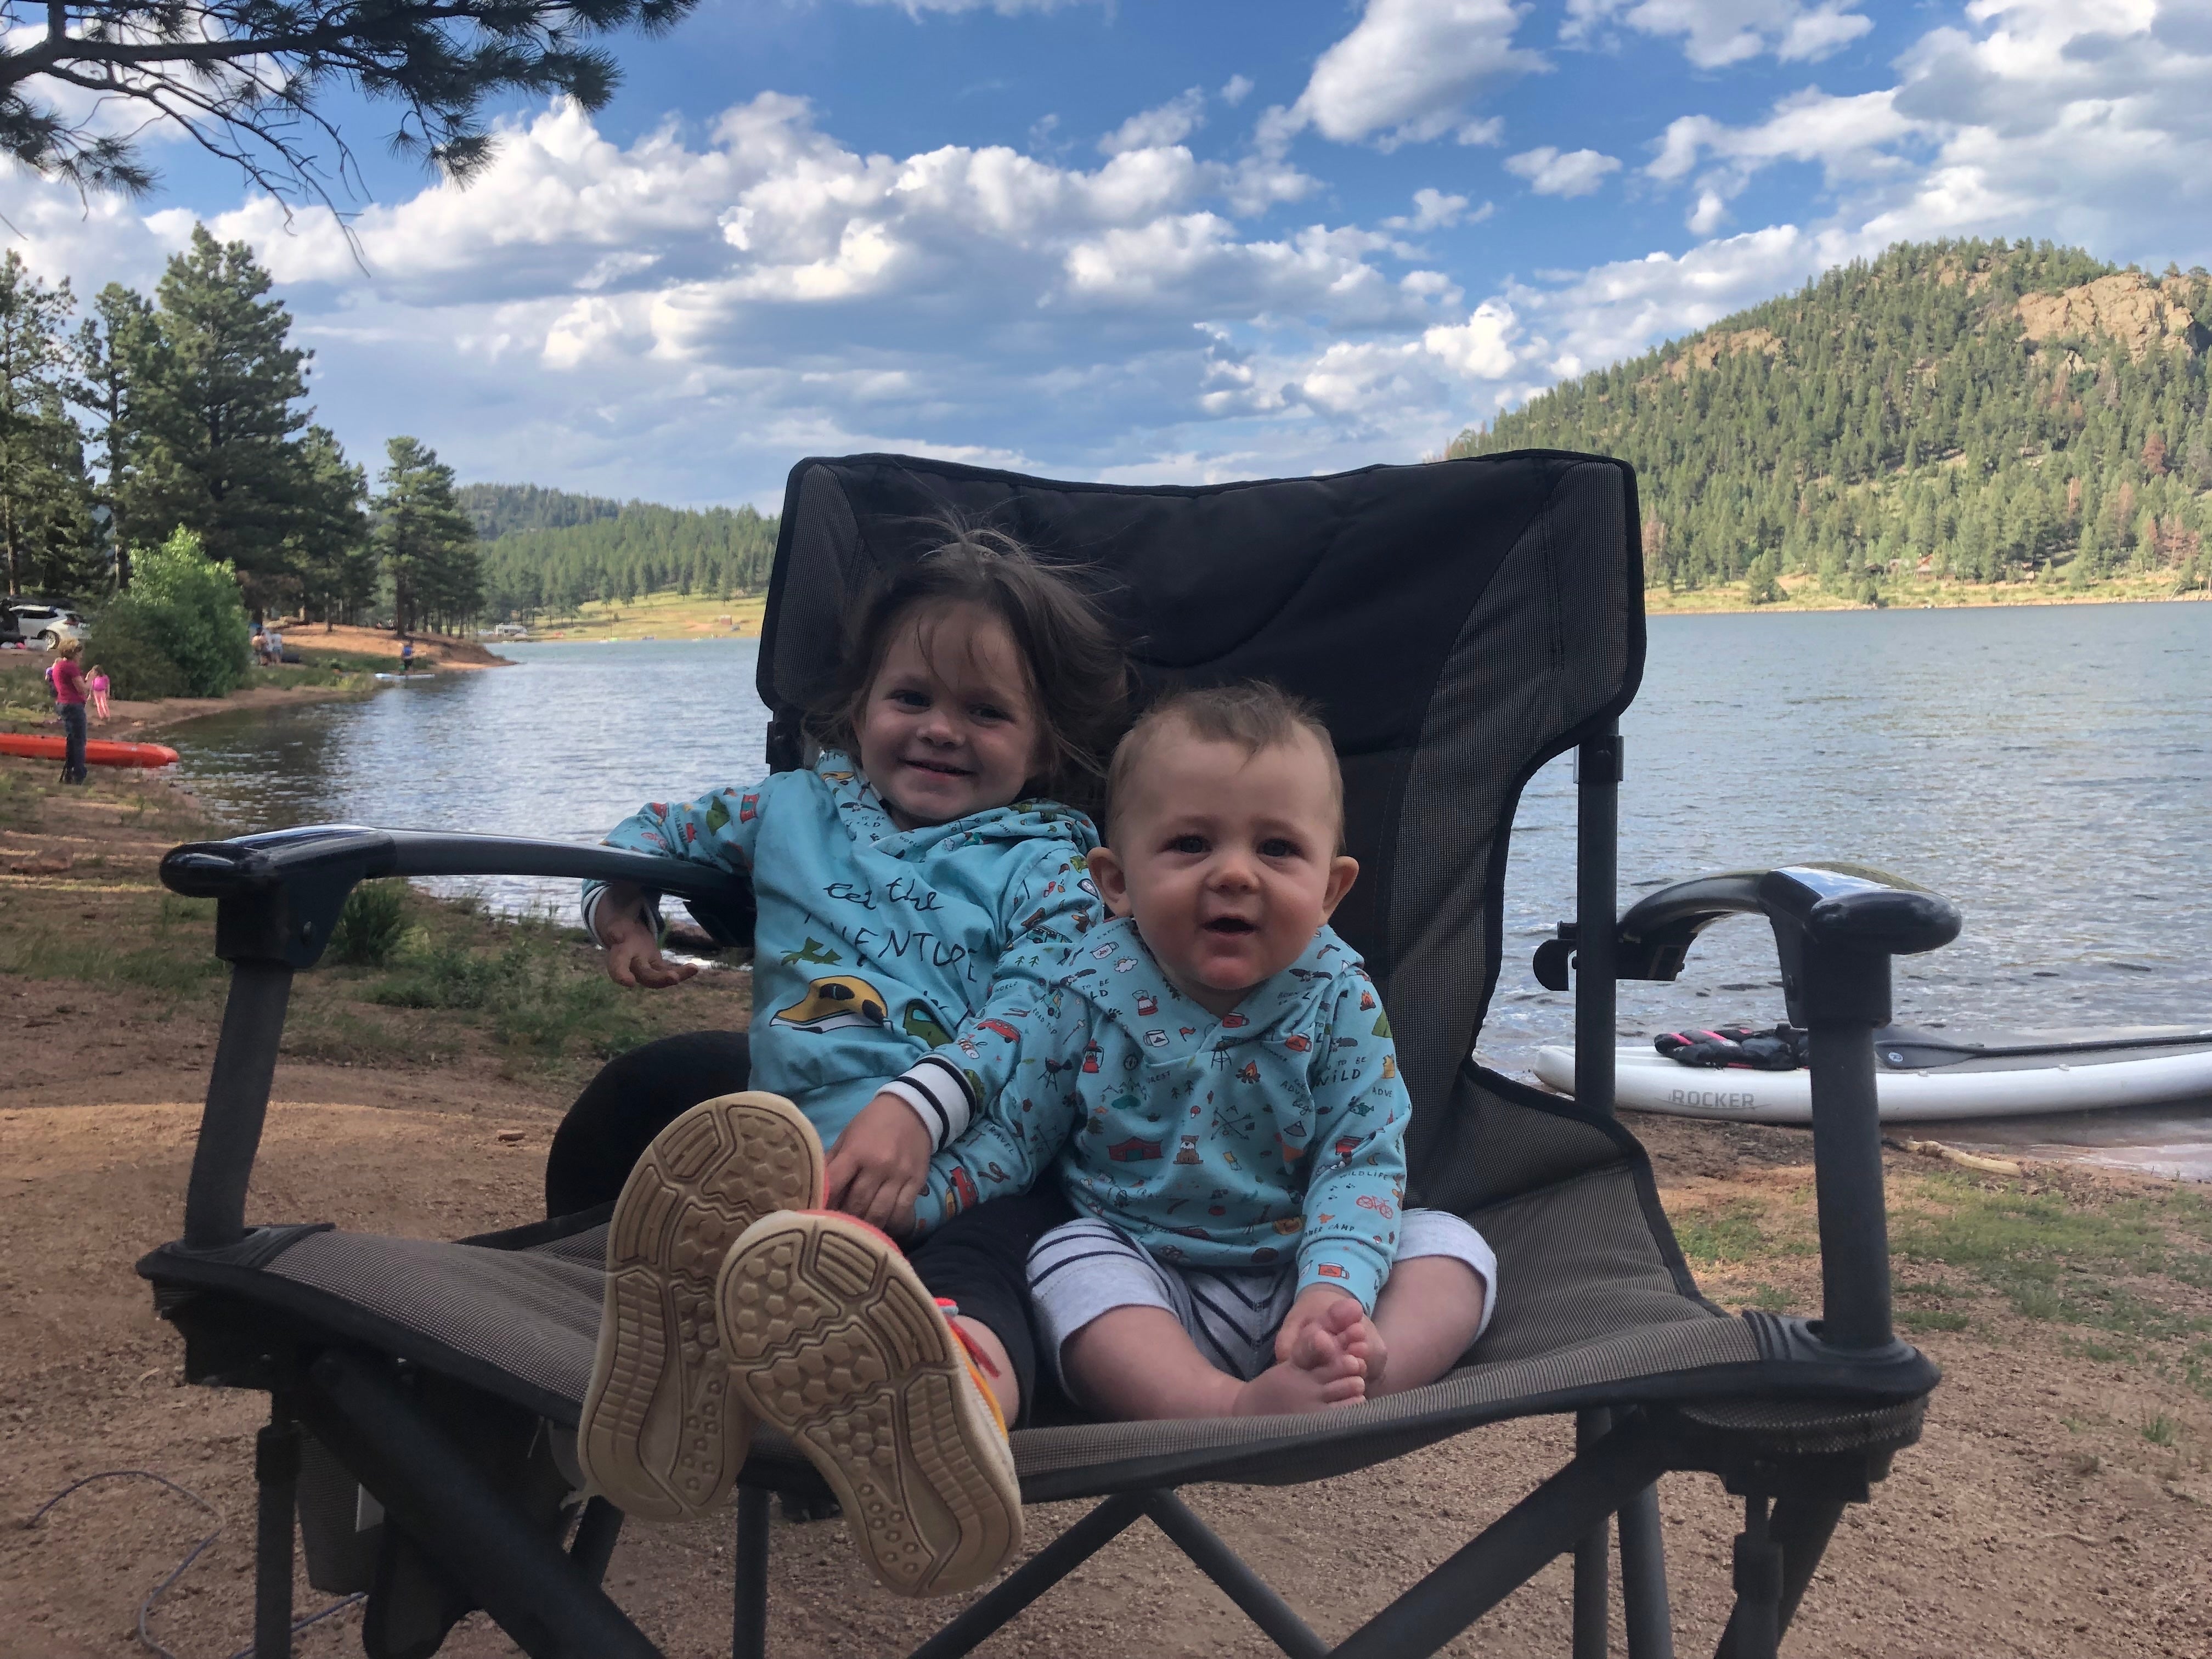 Kiddos enjoying the lake